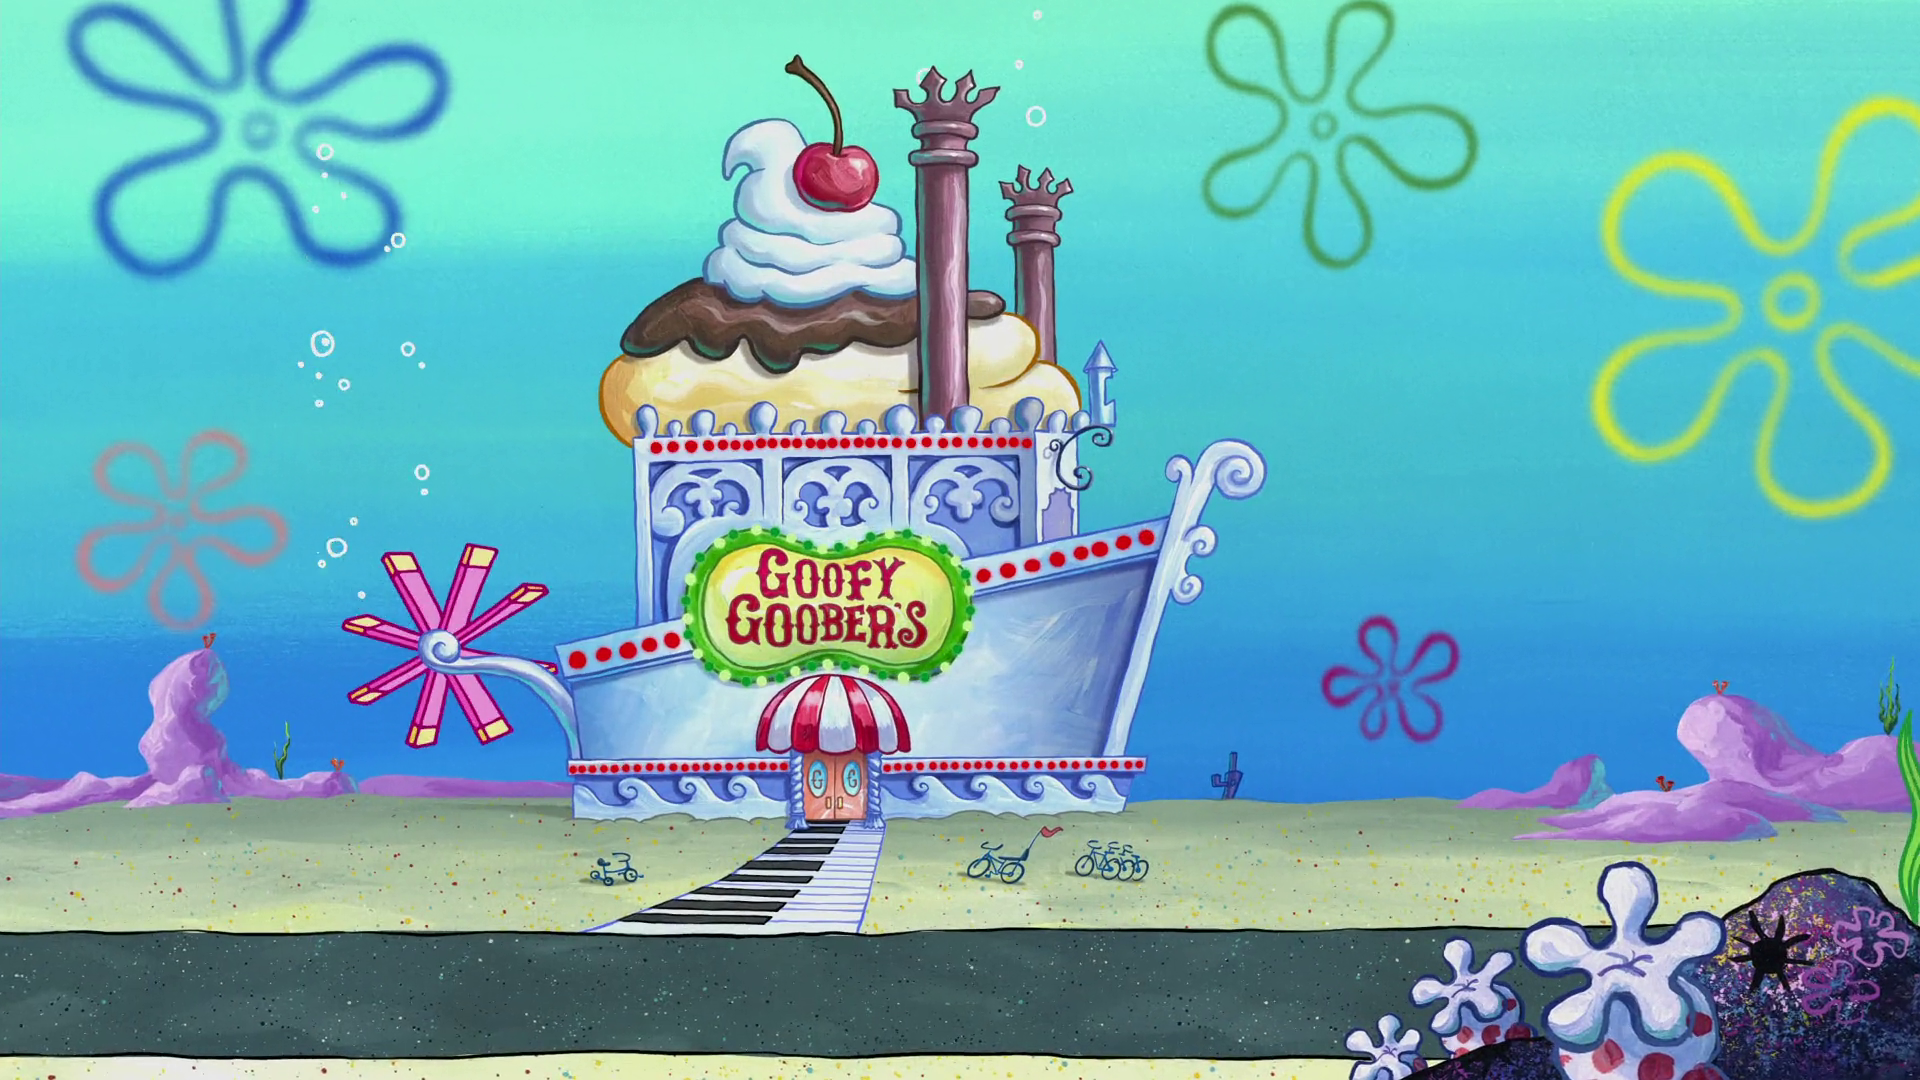 Goofy Goober's Ice Cream Party Boat | Encyclopedia SpongeBobia ...